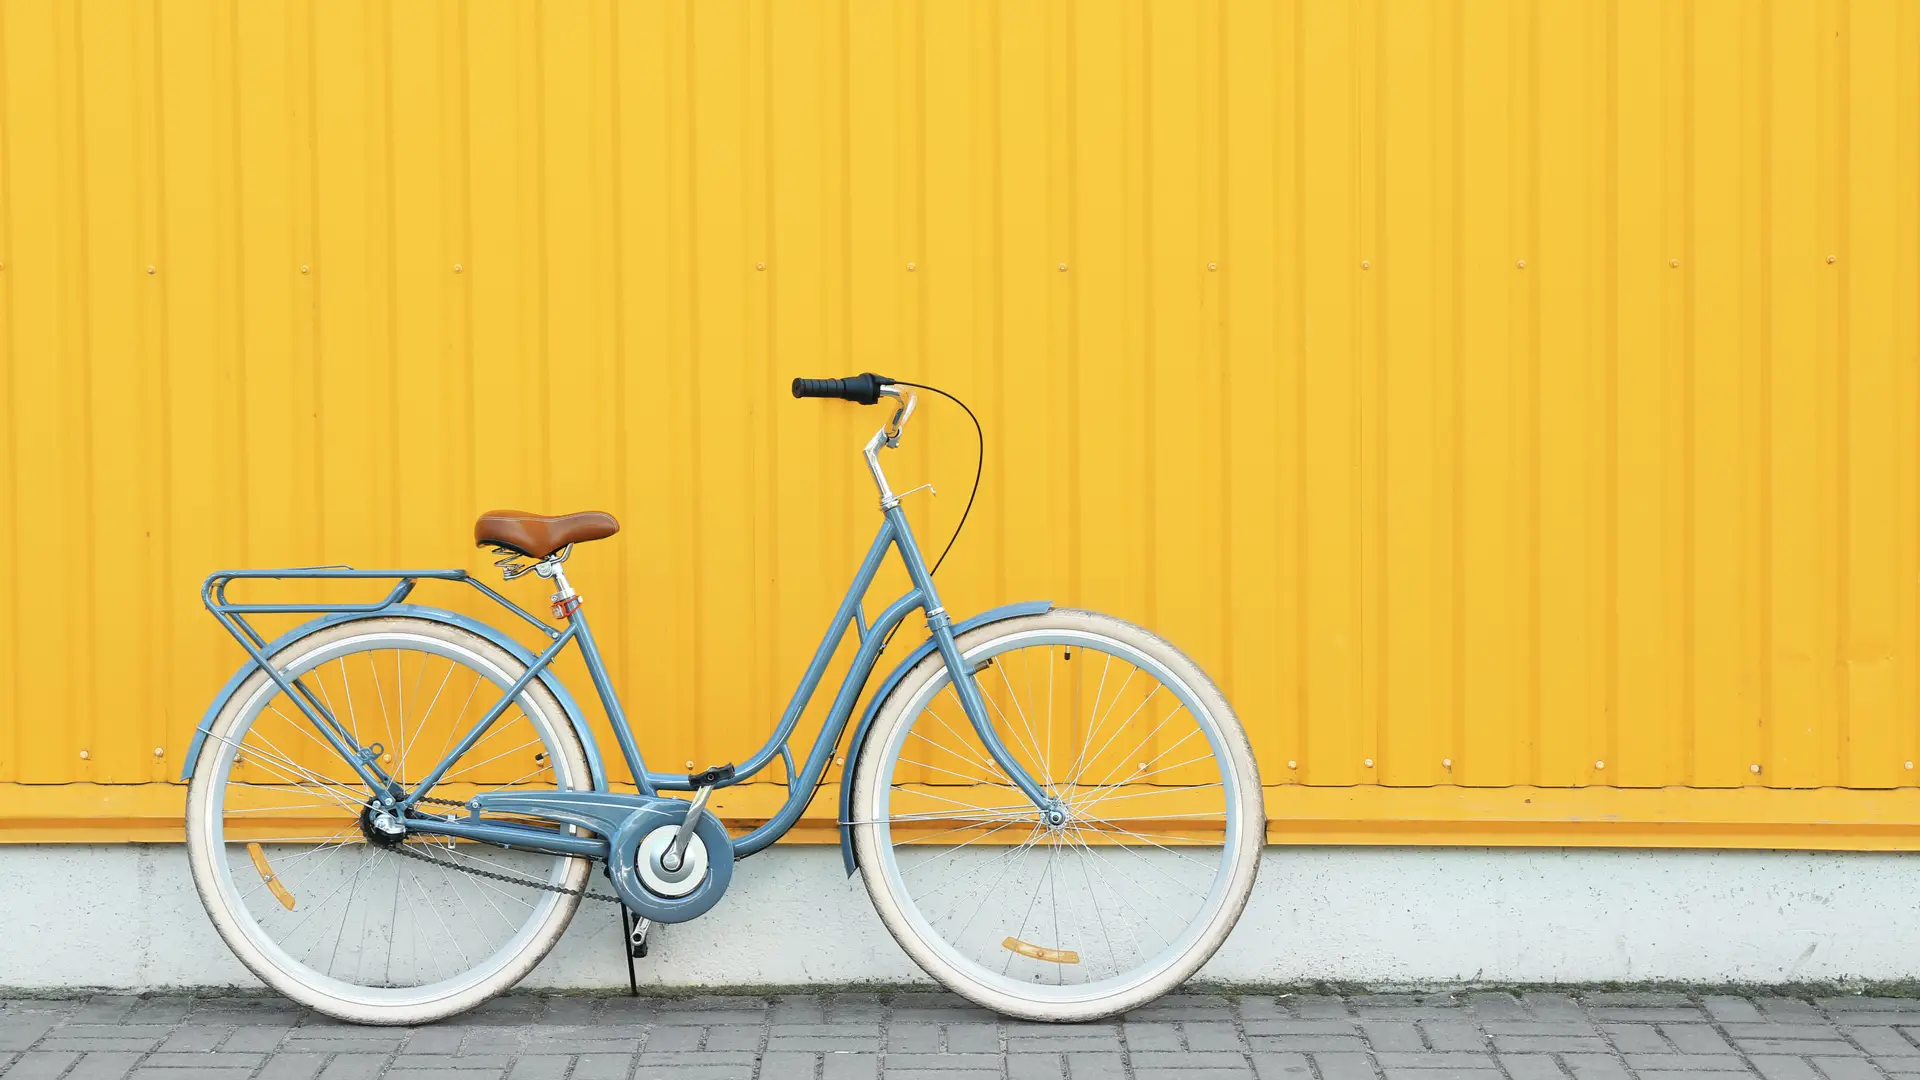 Bicicleta retrô azul encostada em parede amarela